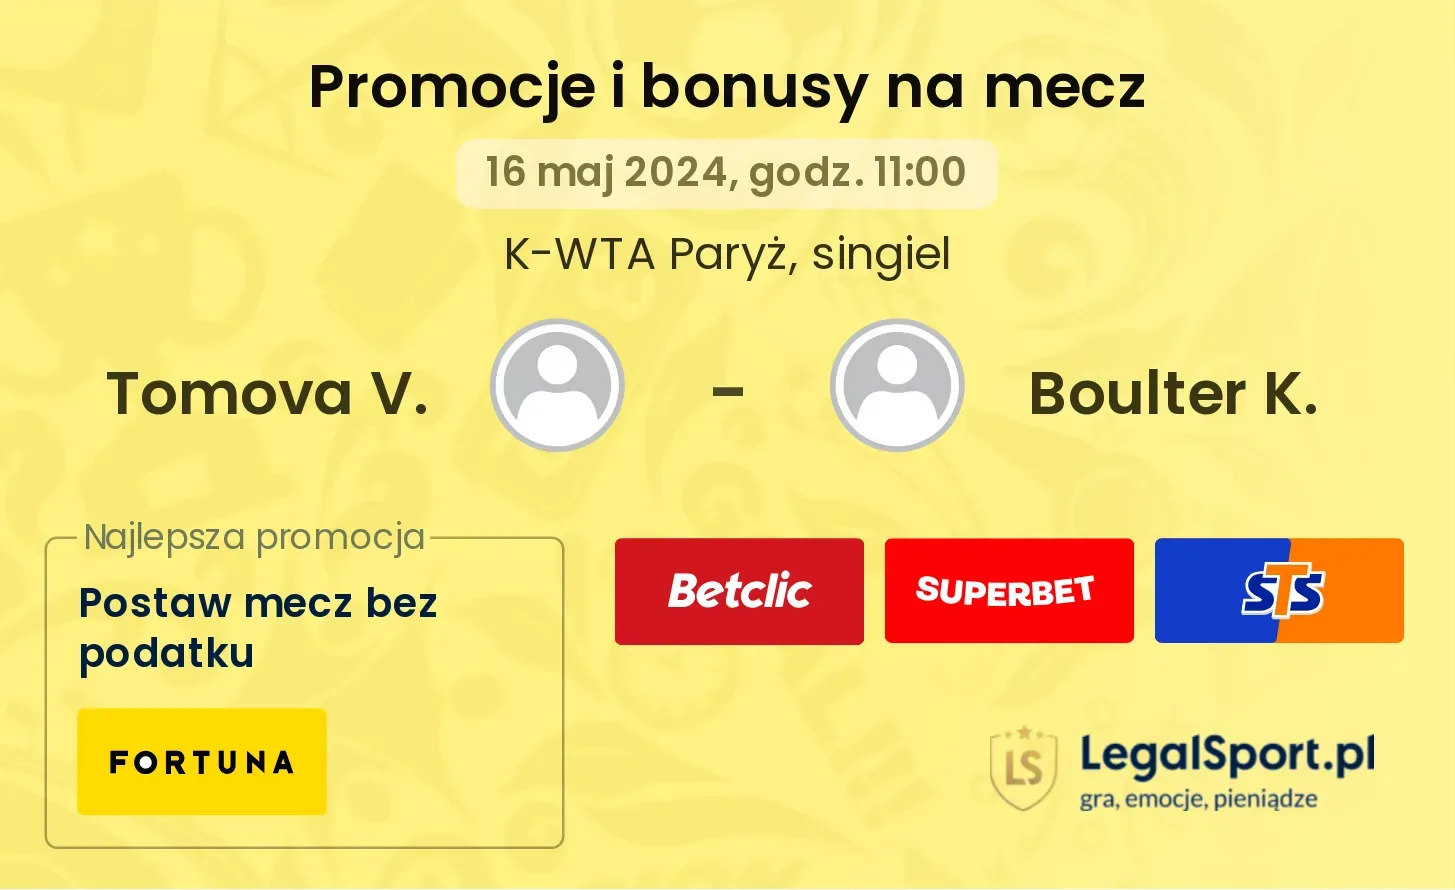 Tomova V. - Boulter K. promocje bonusy na mecz